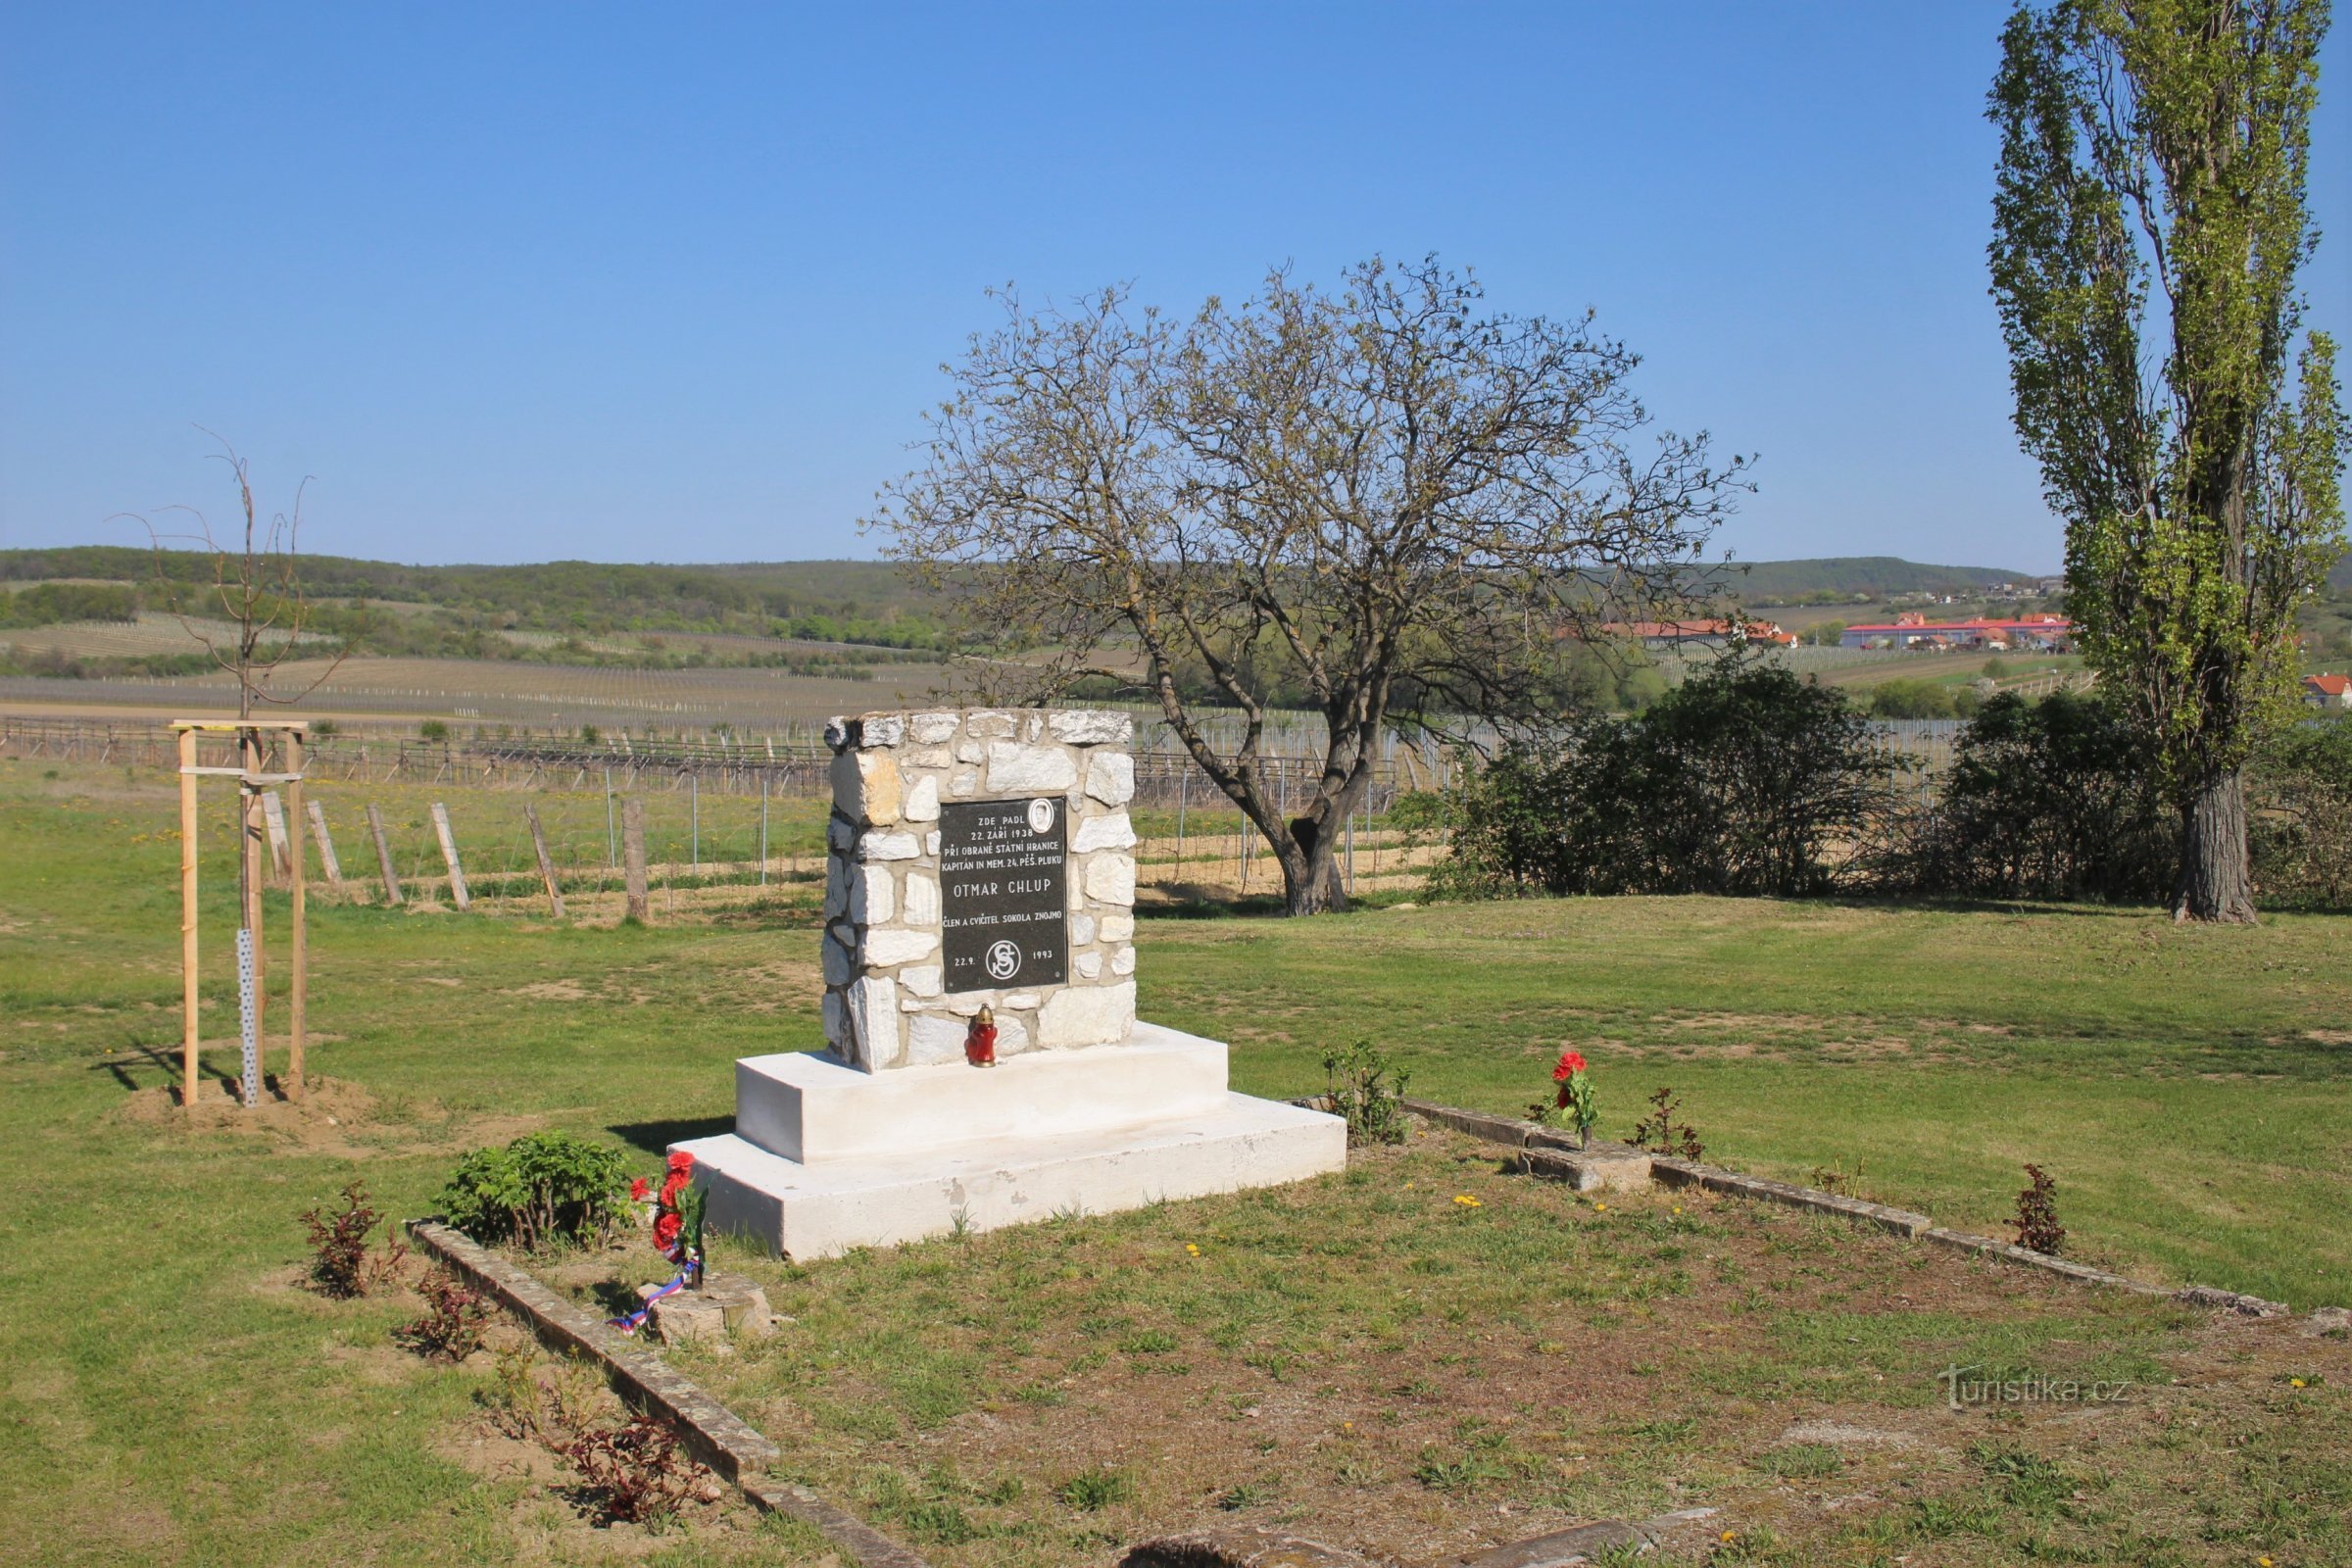 Monumentul lui Otmar Chlupa